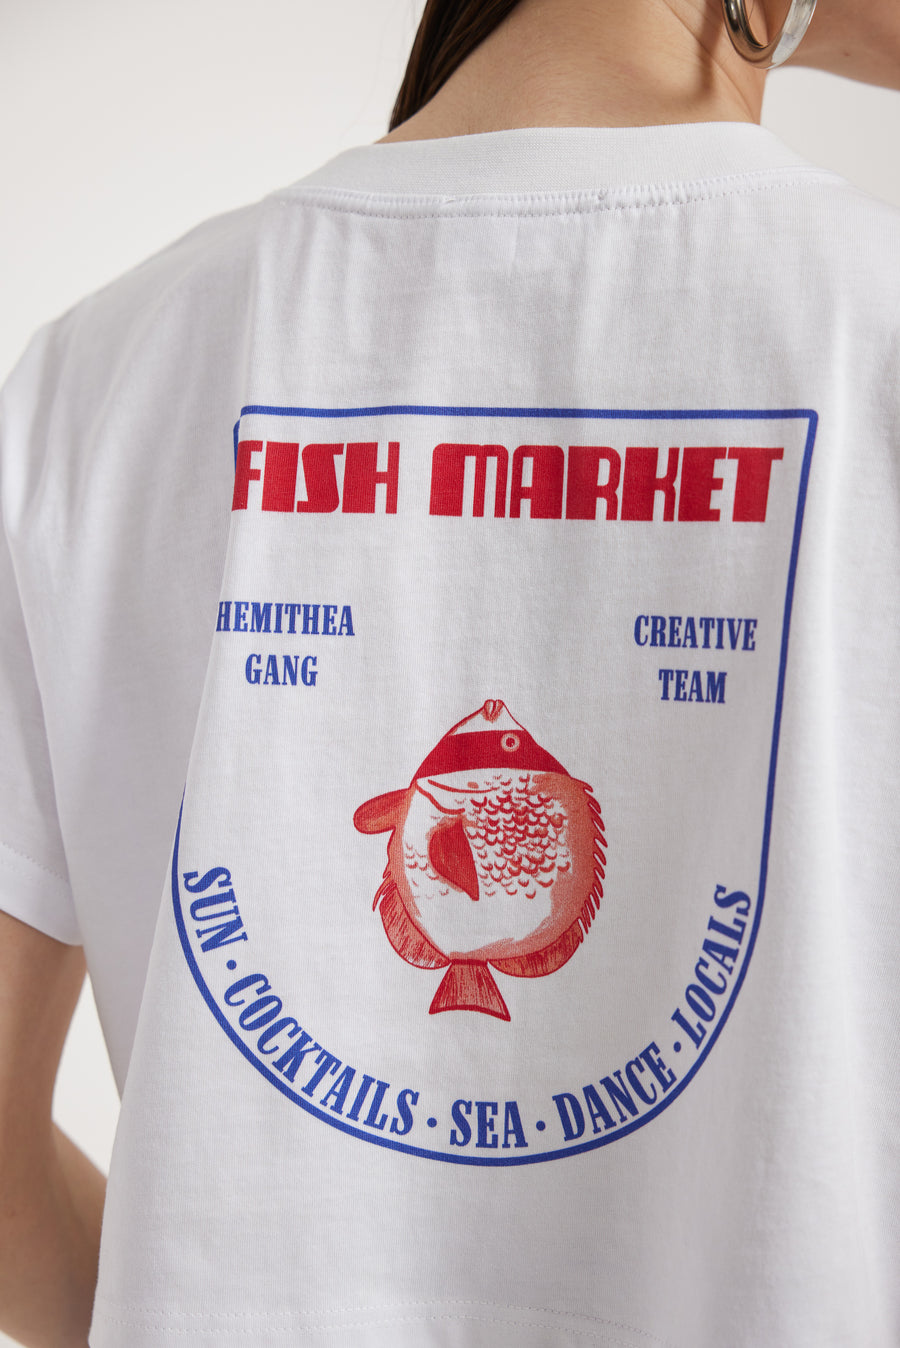 Nala Top (Fish market)